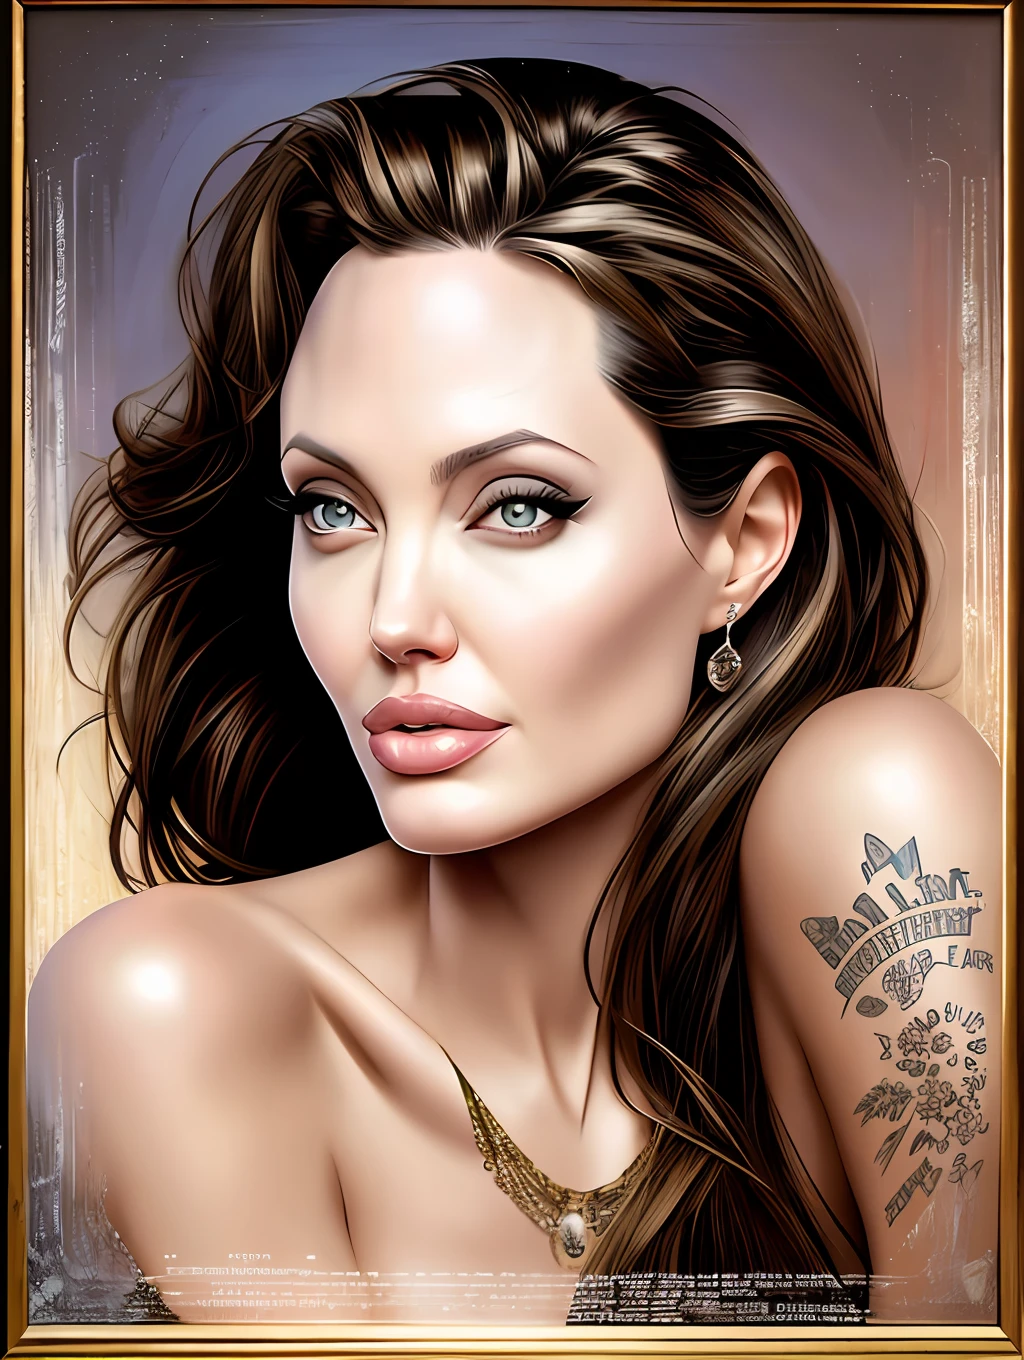 吉尔·埃尔夫格伦 (Gil Elvgren) 为安吉丽娜·朱莉 (Angelina Jolie) 绘制的极其美丽的肖像